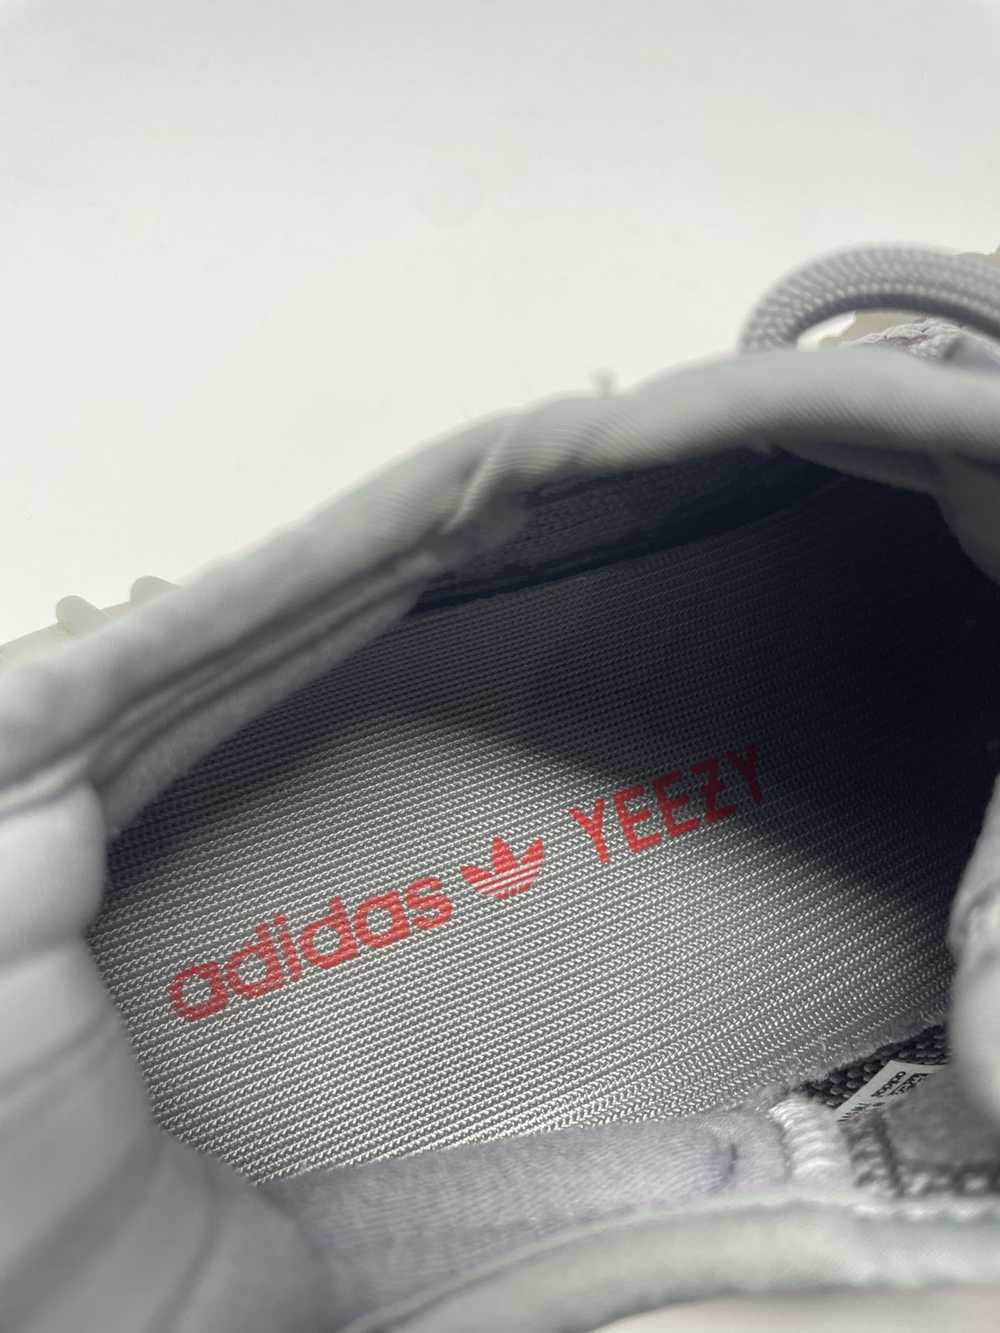 Adidas Yeezy Boost 350 Beluga 2.0 - image 11